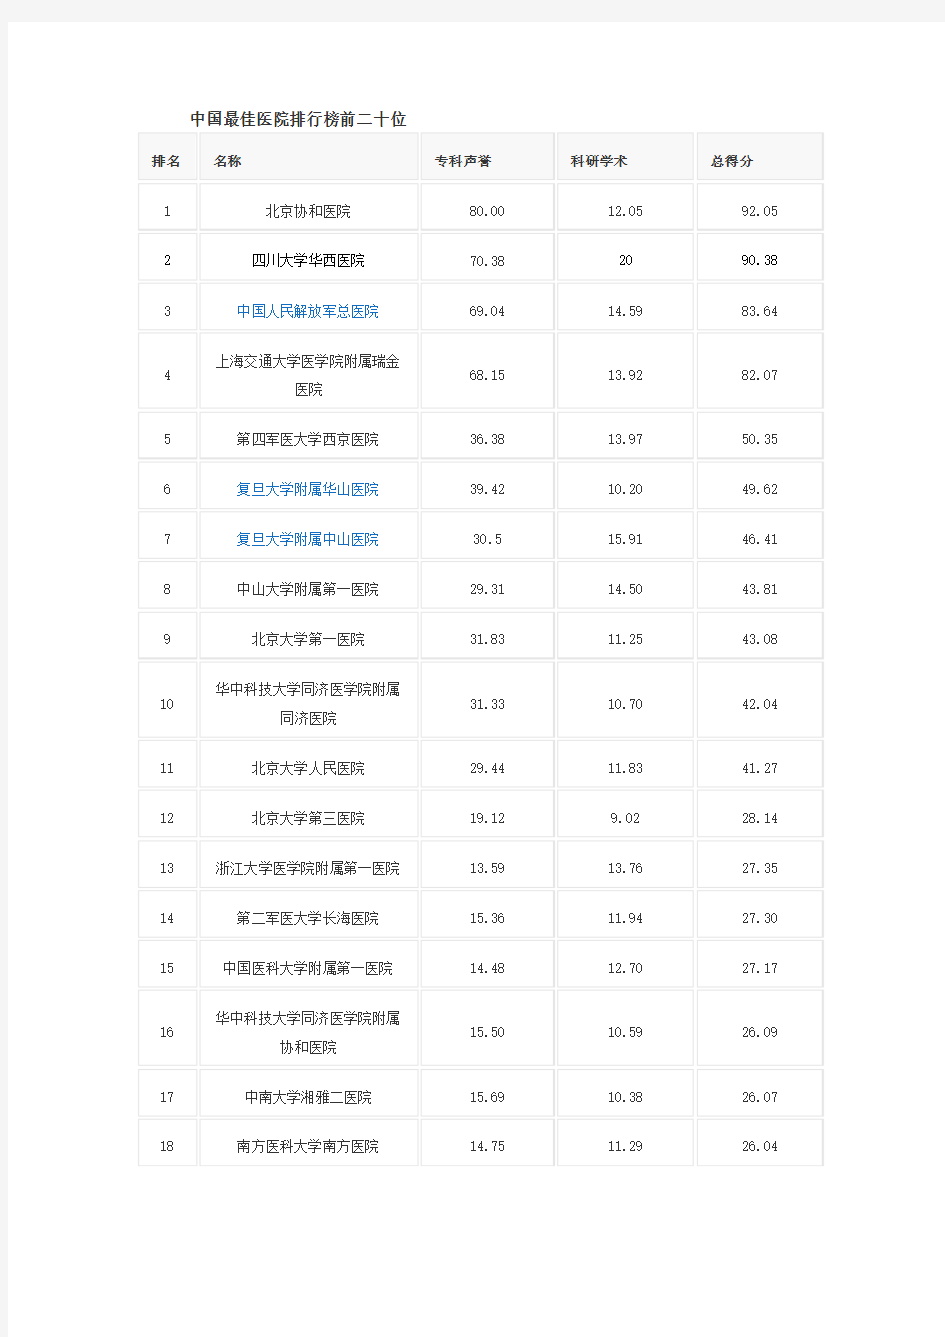 中国最佳医院排行榜前二十位